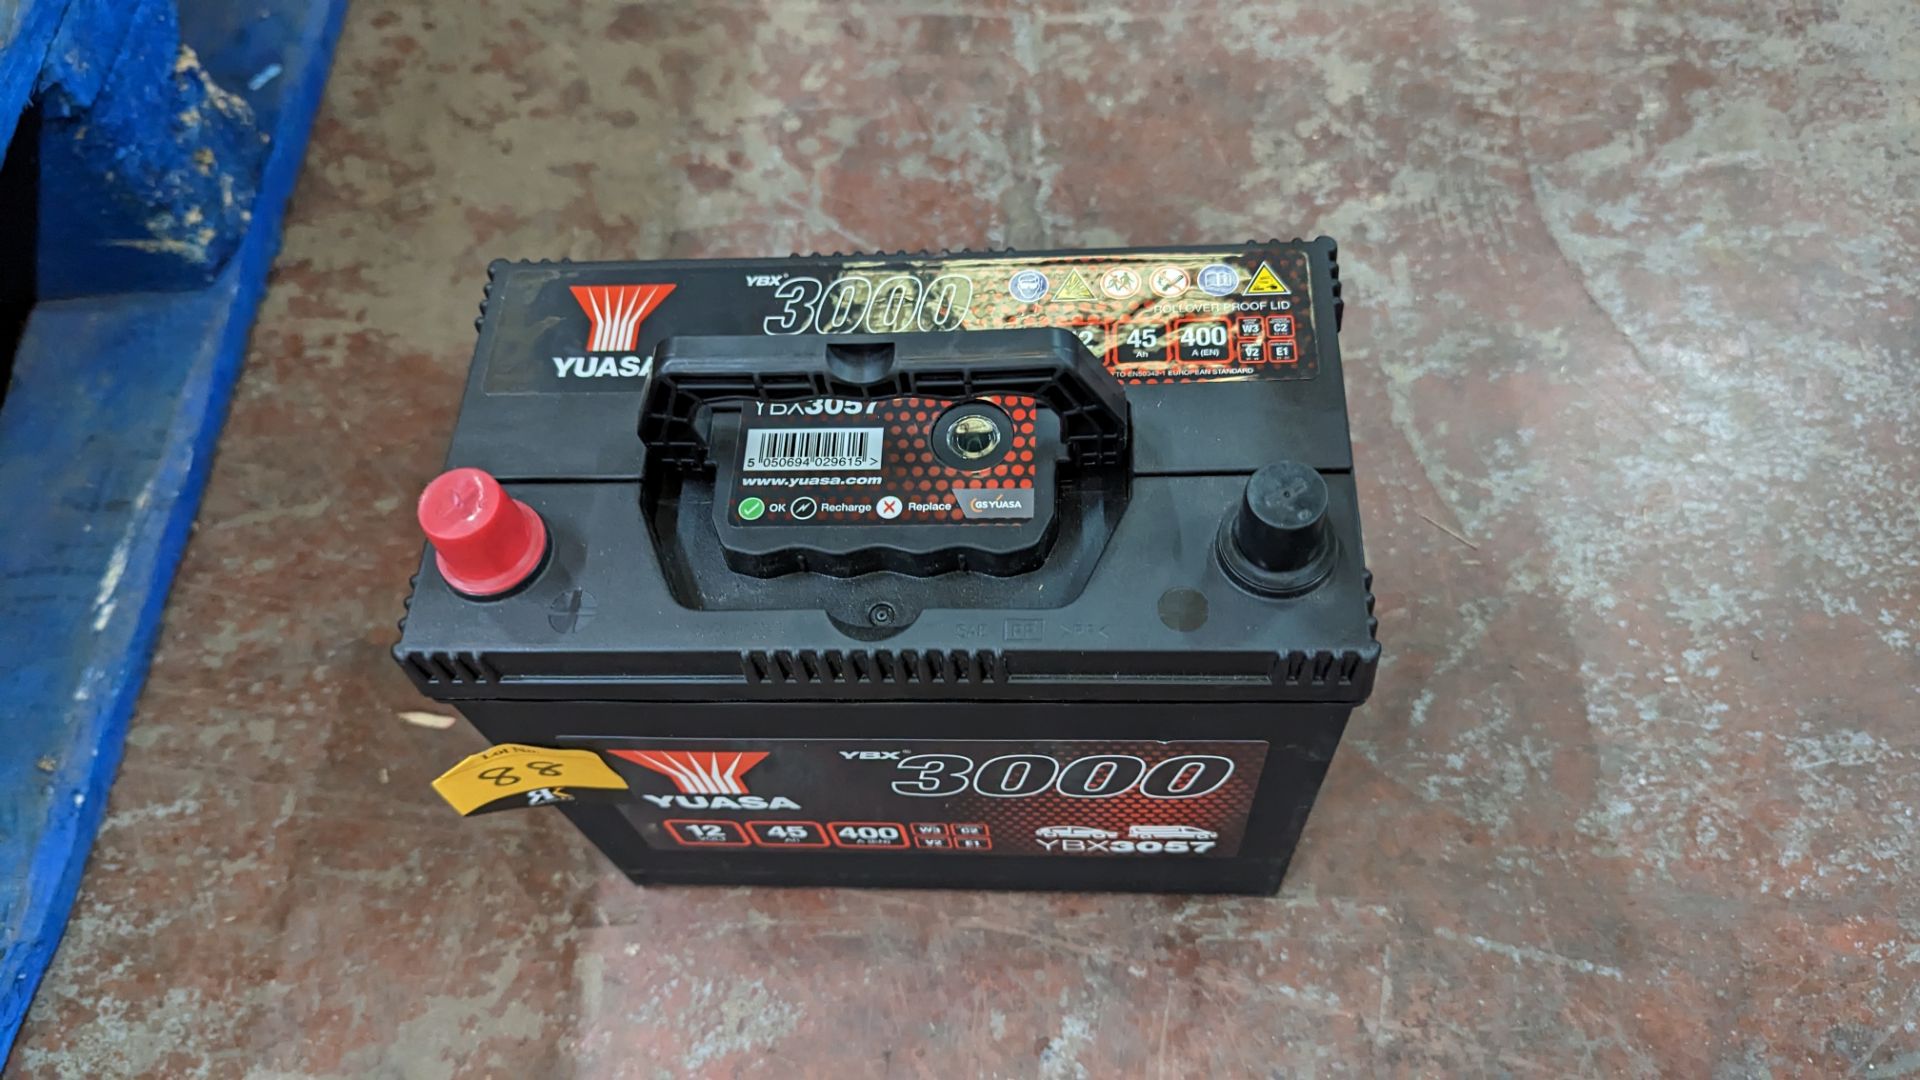 Yuasa vehicle battery model YBX3057, 12V, 45AH, 400A - Image 4 of 7